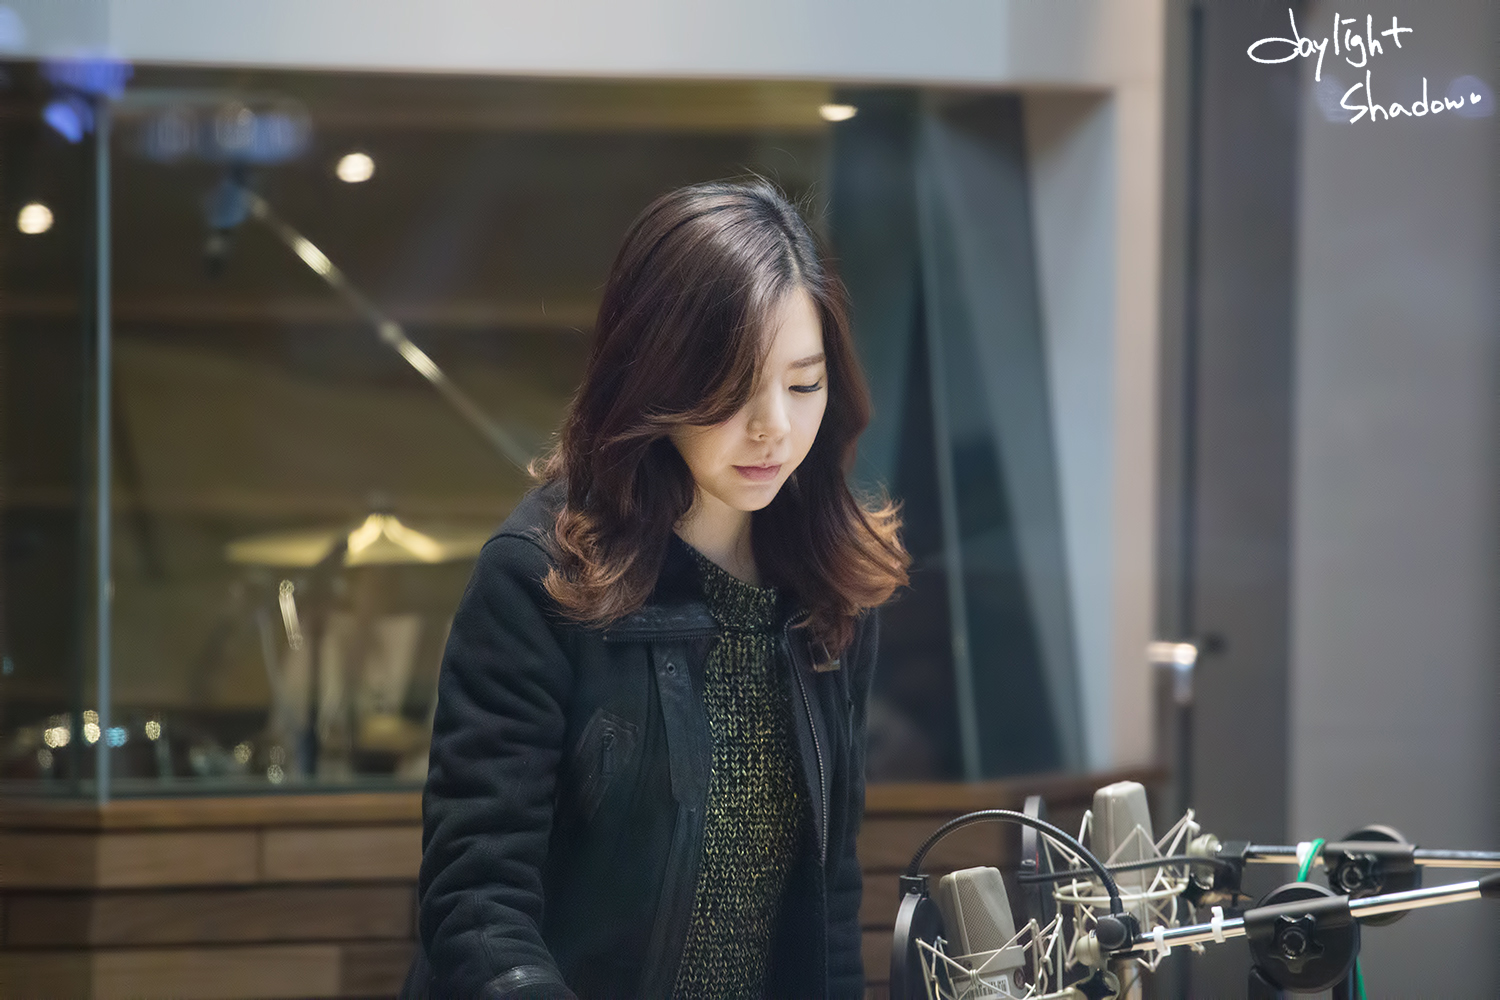 [OTHER][06-02-2015]Hình ảnh mới nhất từ DJ Sunny tại Radio MBC FM4U - "FM Date" - Page 10 2712CC4C5547323418B2A0